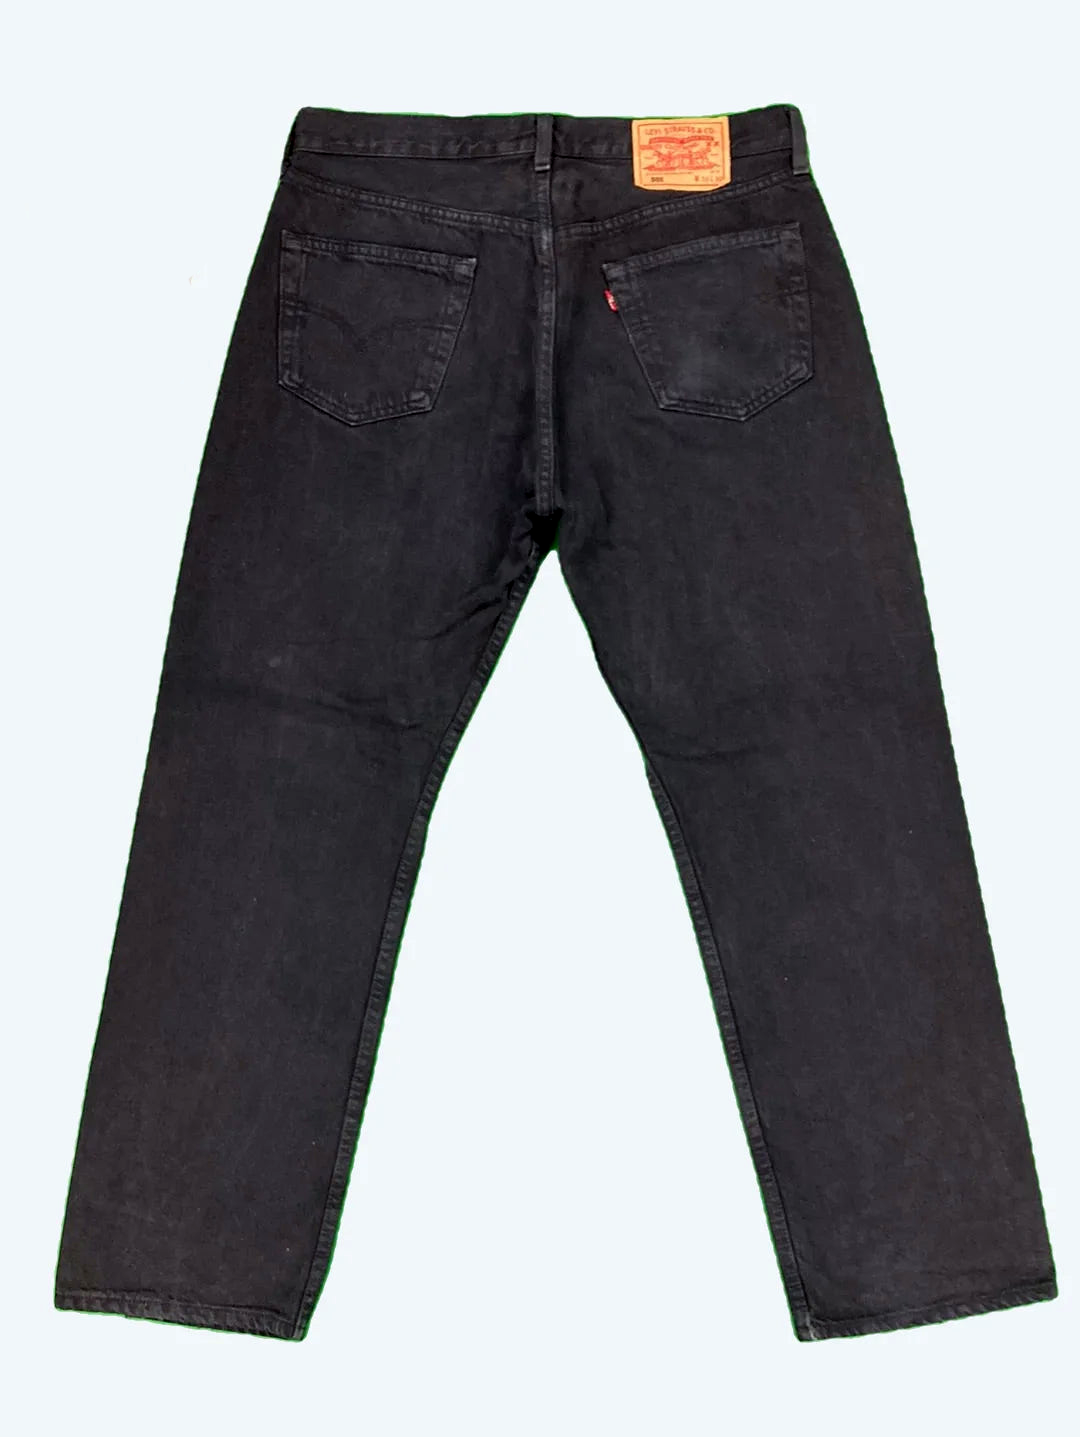 Levi's 501 Jeans 34/30 (L)